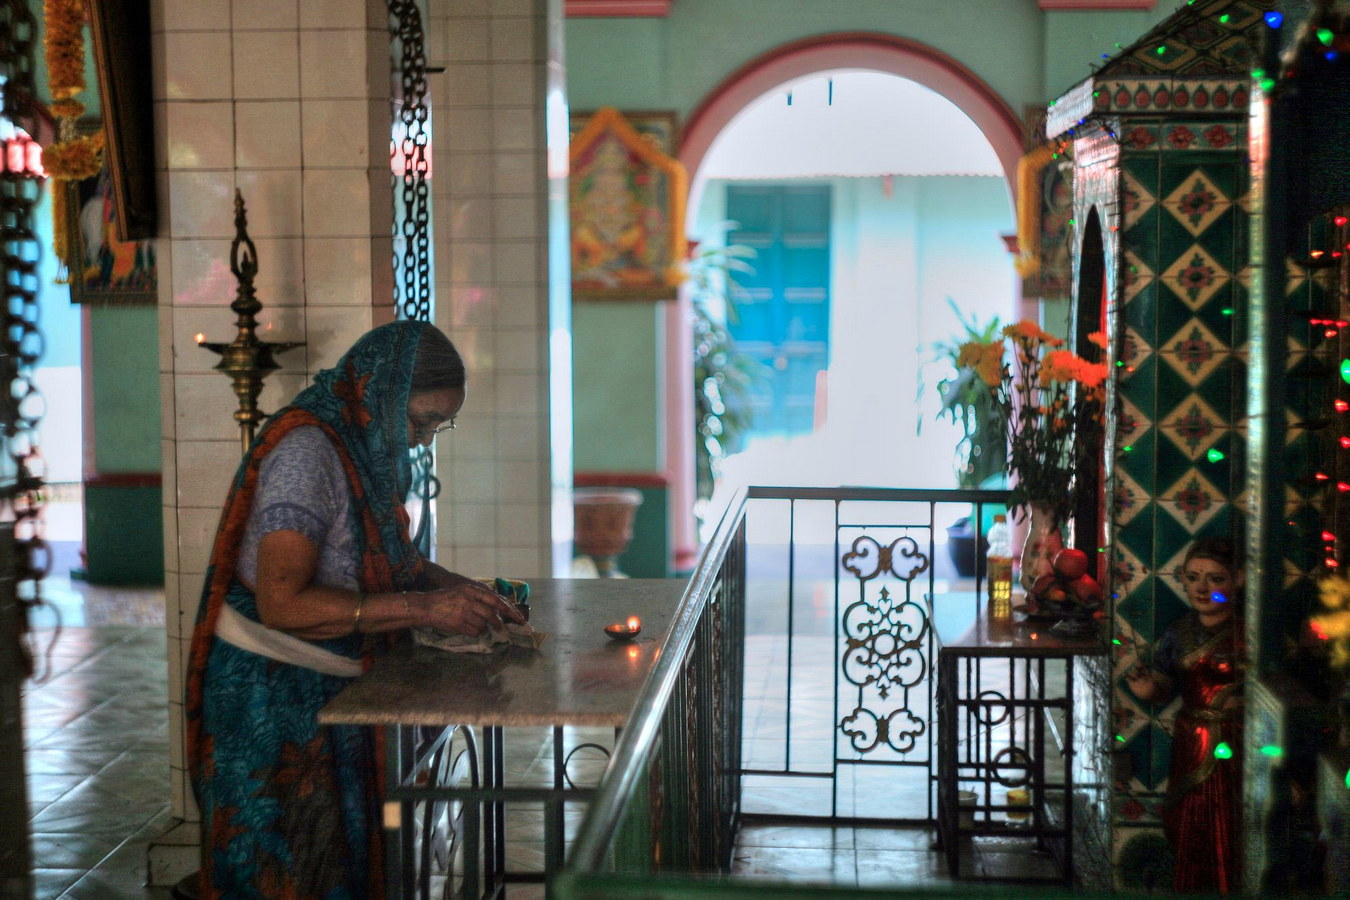 Chùm ảnh: Ngôi đền thiêng mang dấu ấn của người Tamil ở Sài Gòn xưa